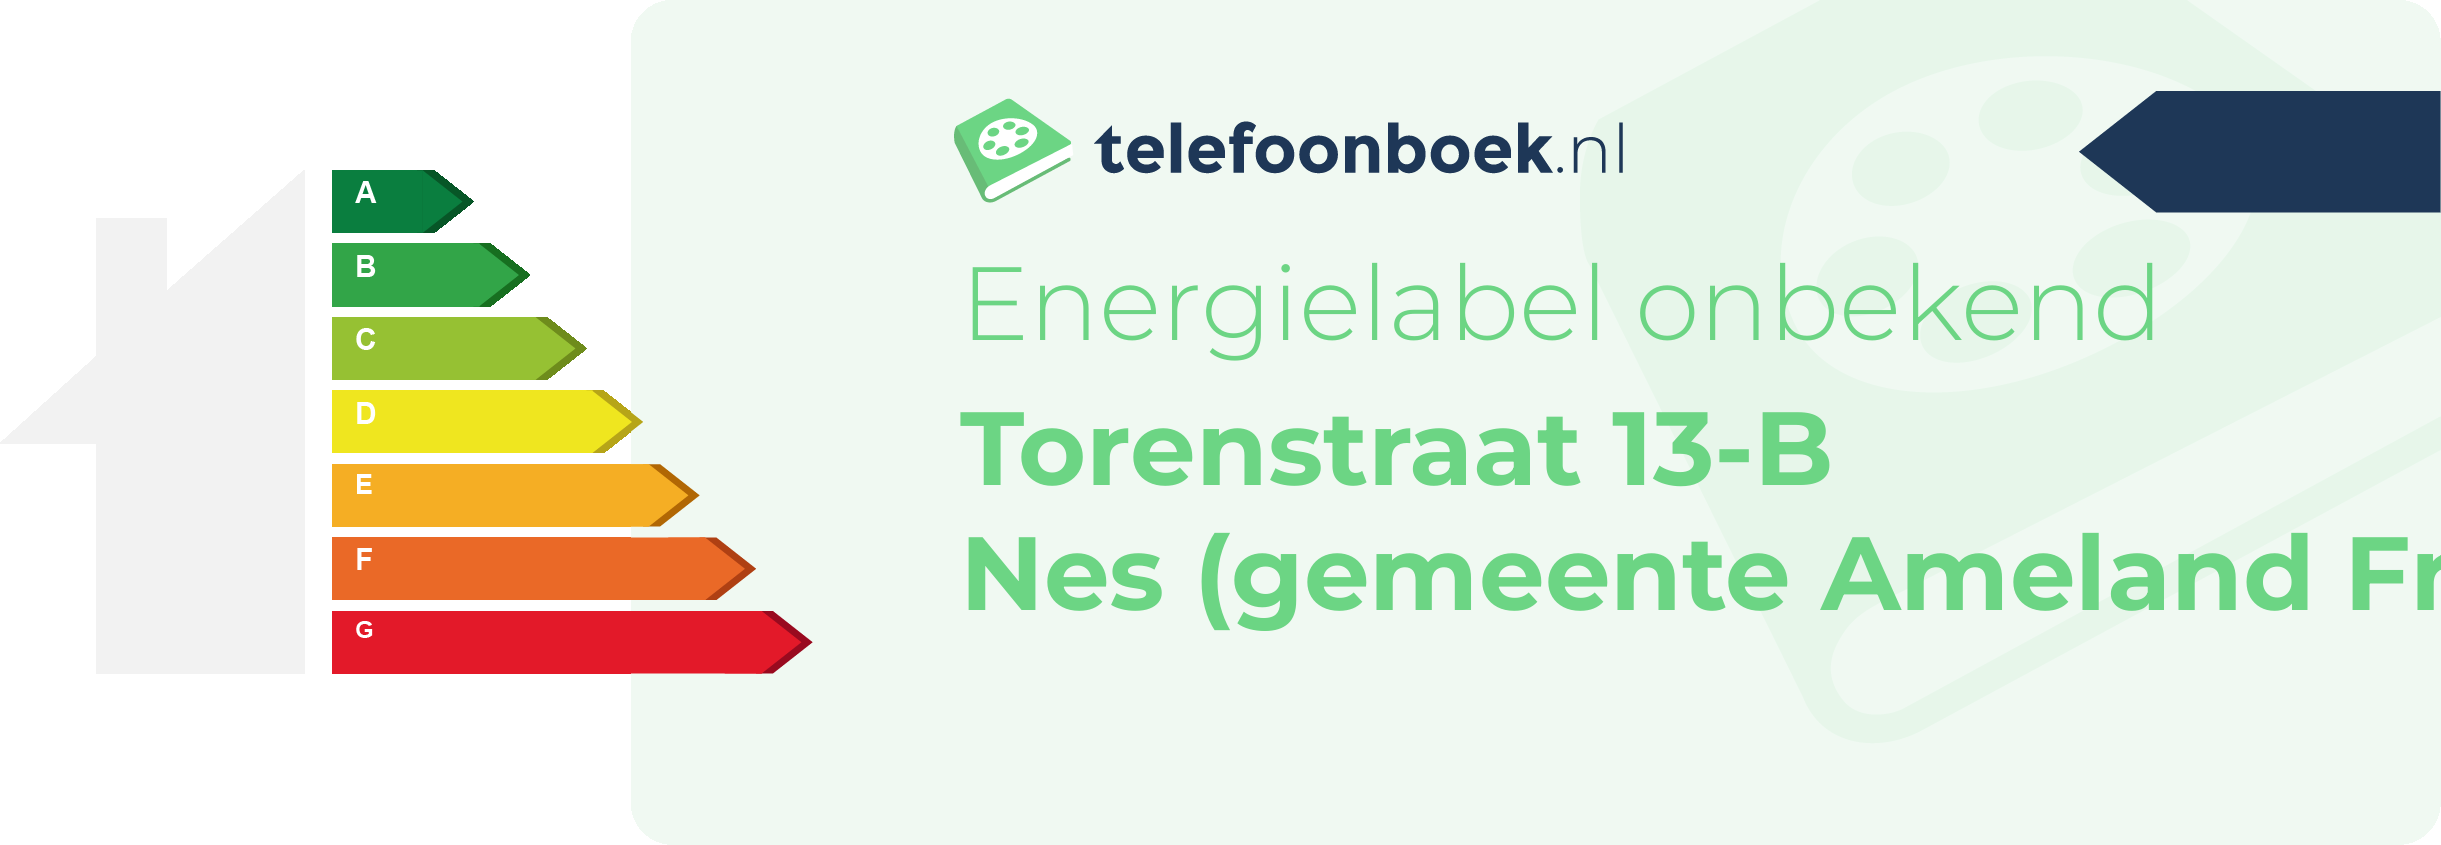 Energielabel Torenstraat 13-B Nes (gemeente Ameland Friesland)